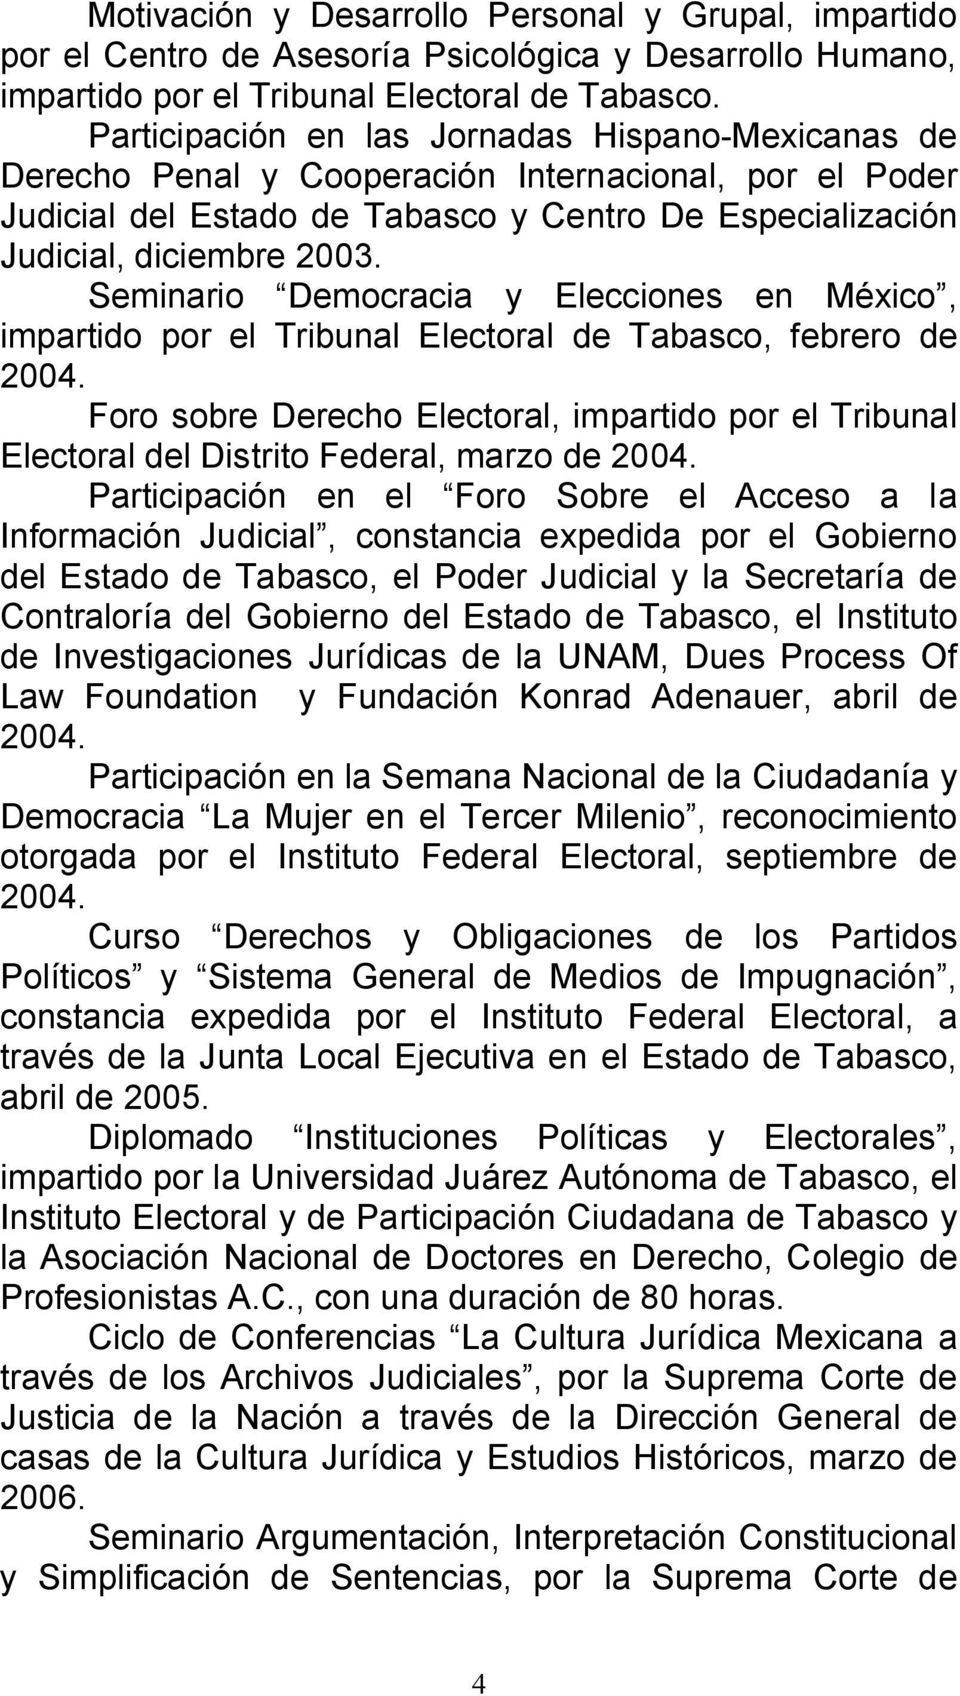 Seminario Democracia y Elecciones en México, impartido por el Tribunal Electoral de Tabasco, febrero de 2004.